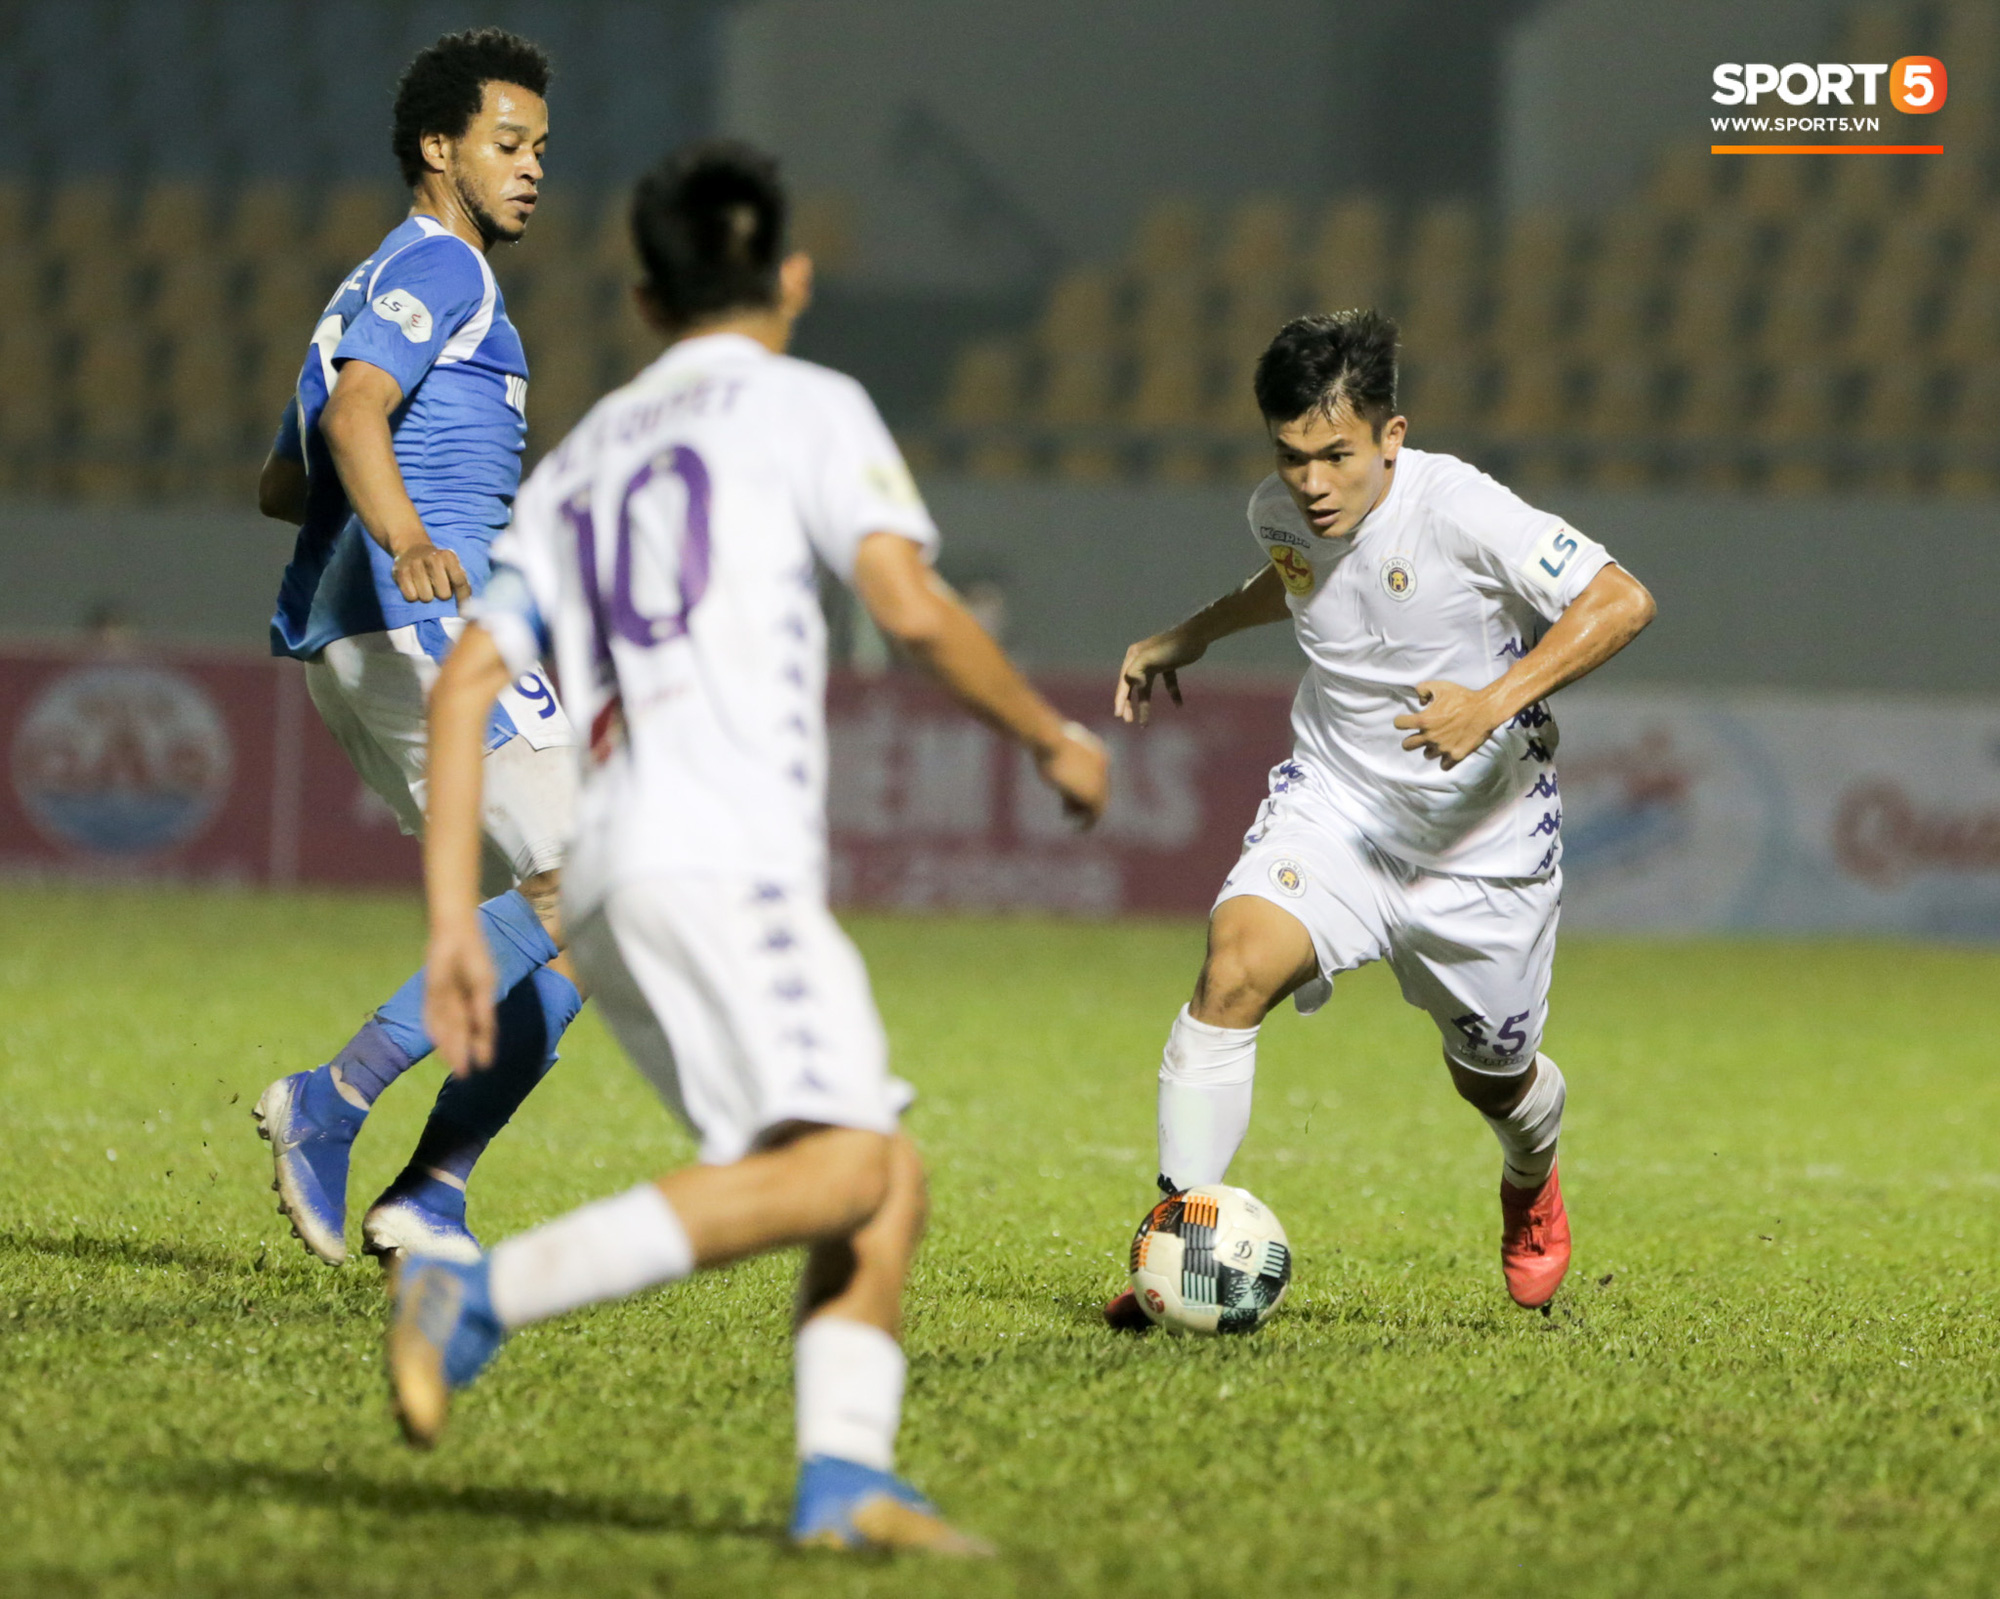 Đội hình cầu thủ U22 Việt Nam hay nhất đang chơi ở V.League: Không tệ cho mục tiêu bảo vệ HCV SEA Games - Ảnh 2.